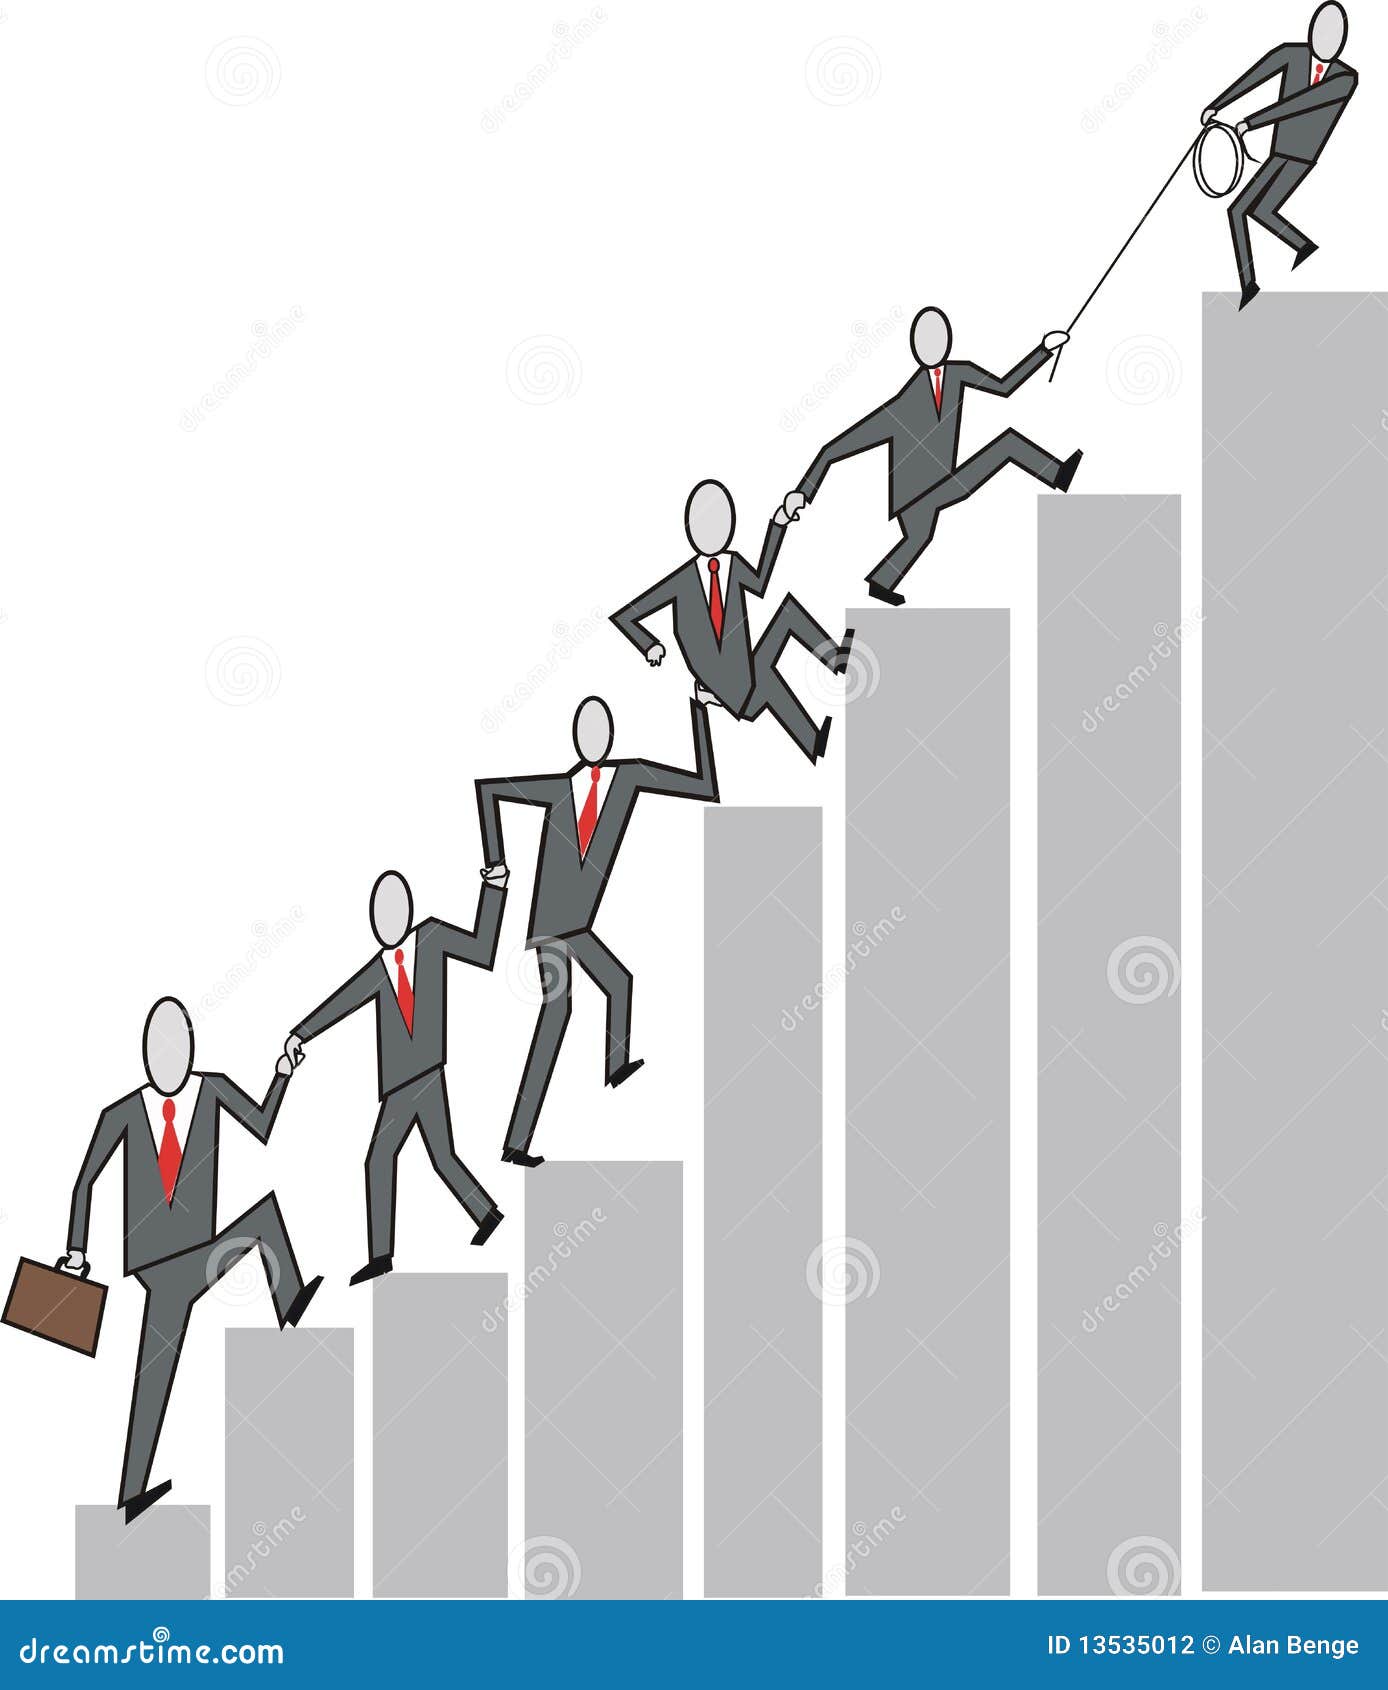 Business teamwork cartoon stock illustration. Illustration of office -  13535012